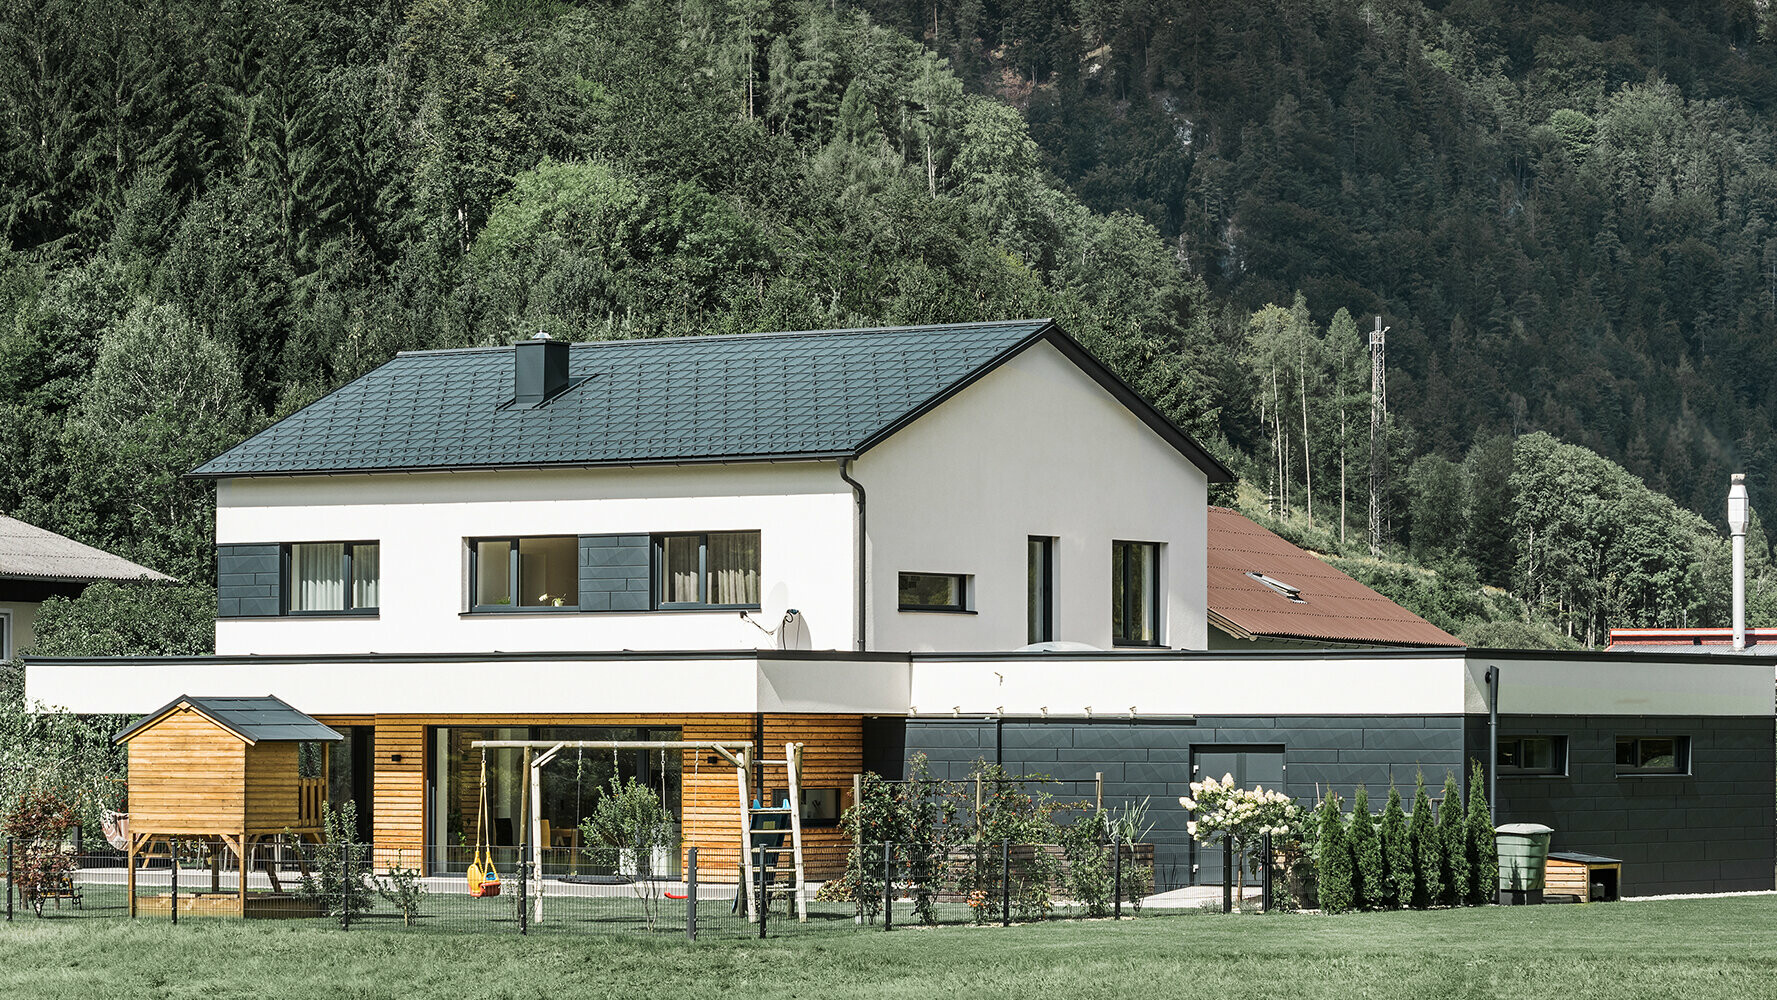 Novo izgrađena obiteljska kuća s fasadom od ariševine u kombinaciji s PREFA panelom Siding.X u antracit boji.